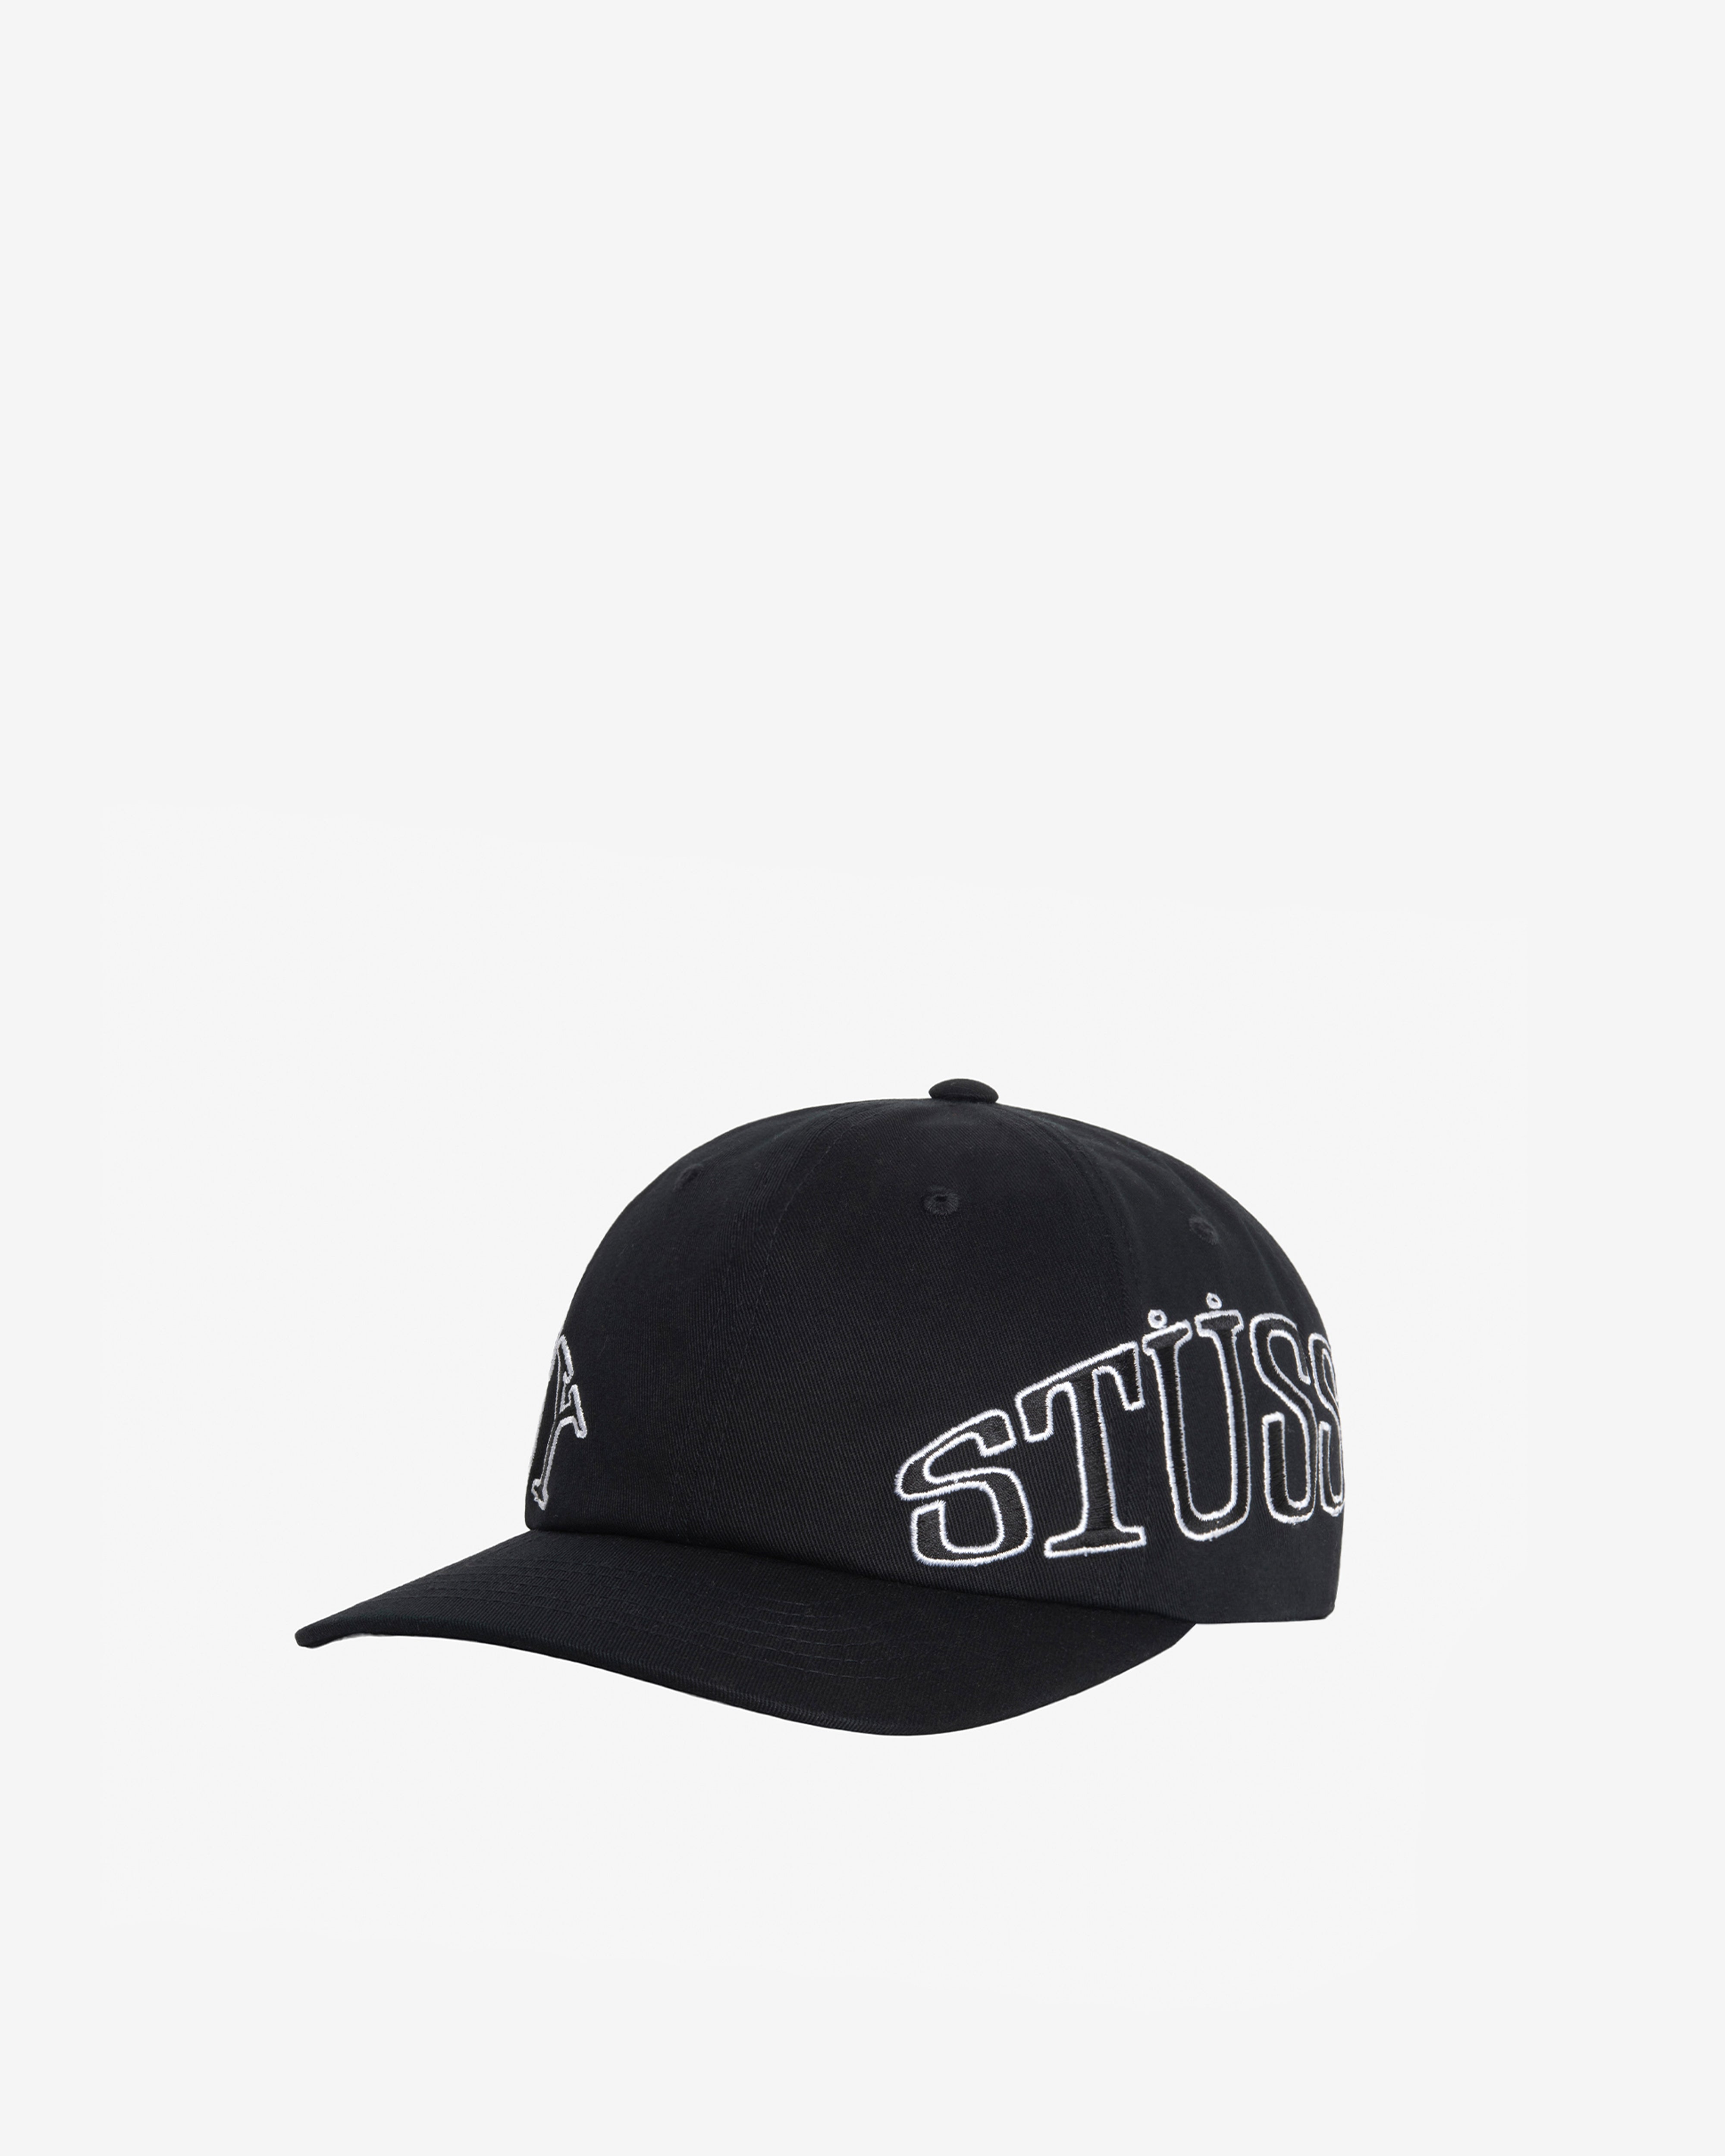 Stüssy - Men's Arc Low Pro Strapback Cap - (Black) – DSMNY E-SHOP